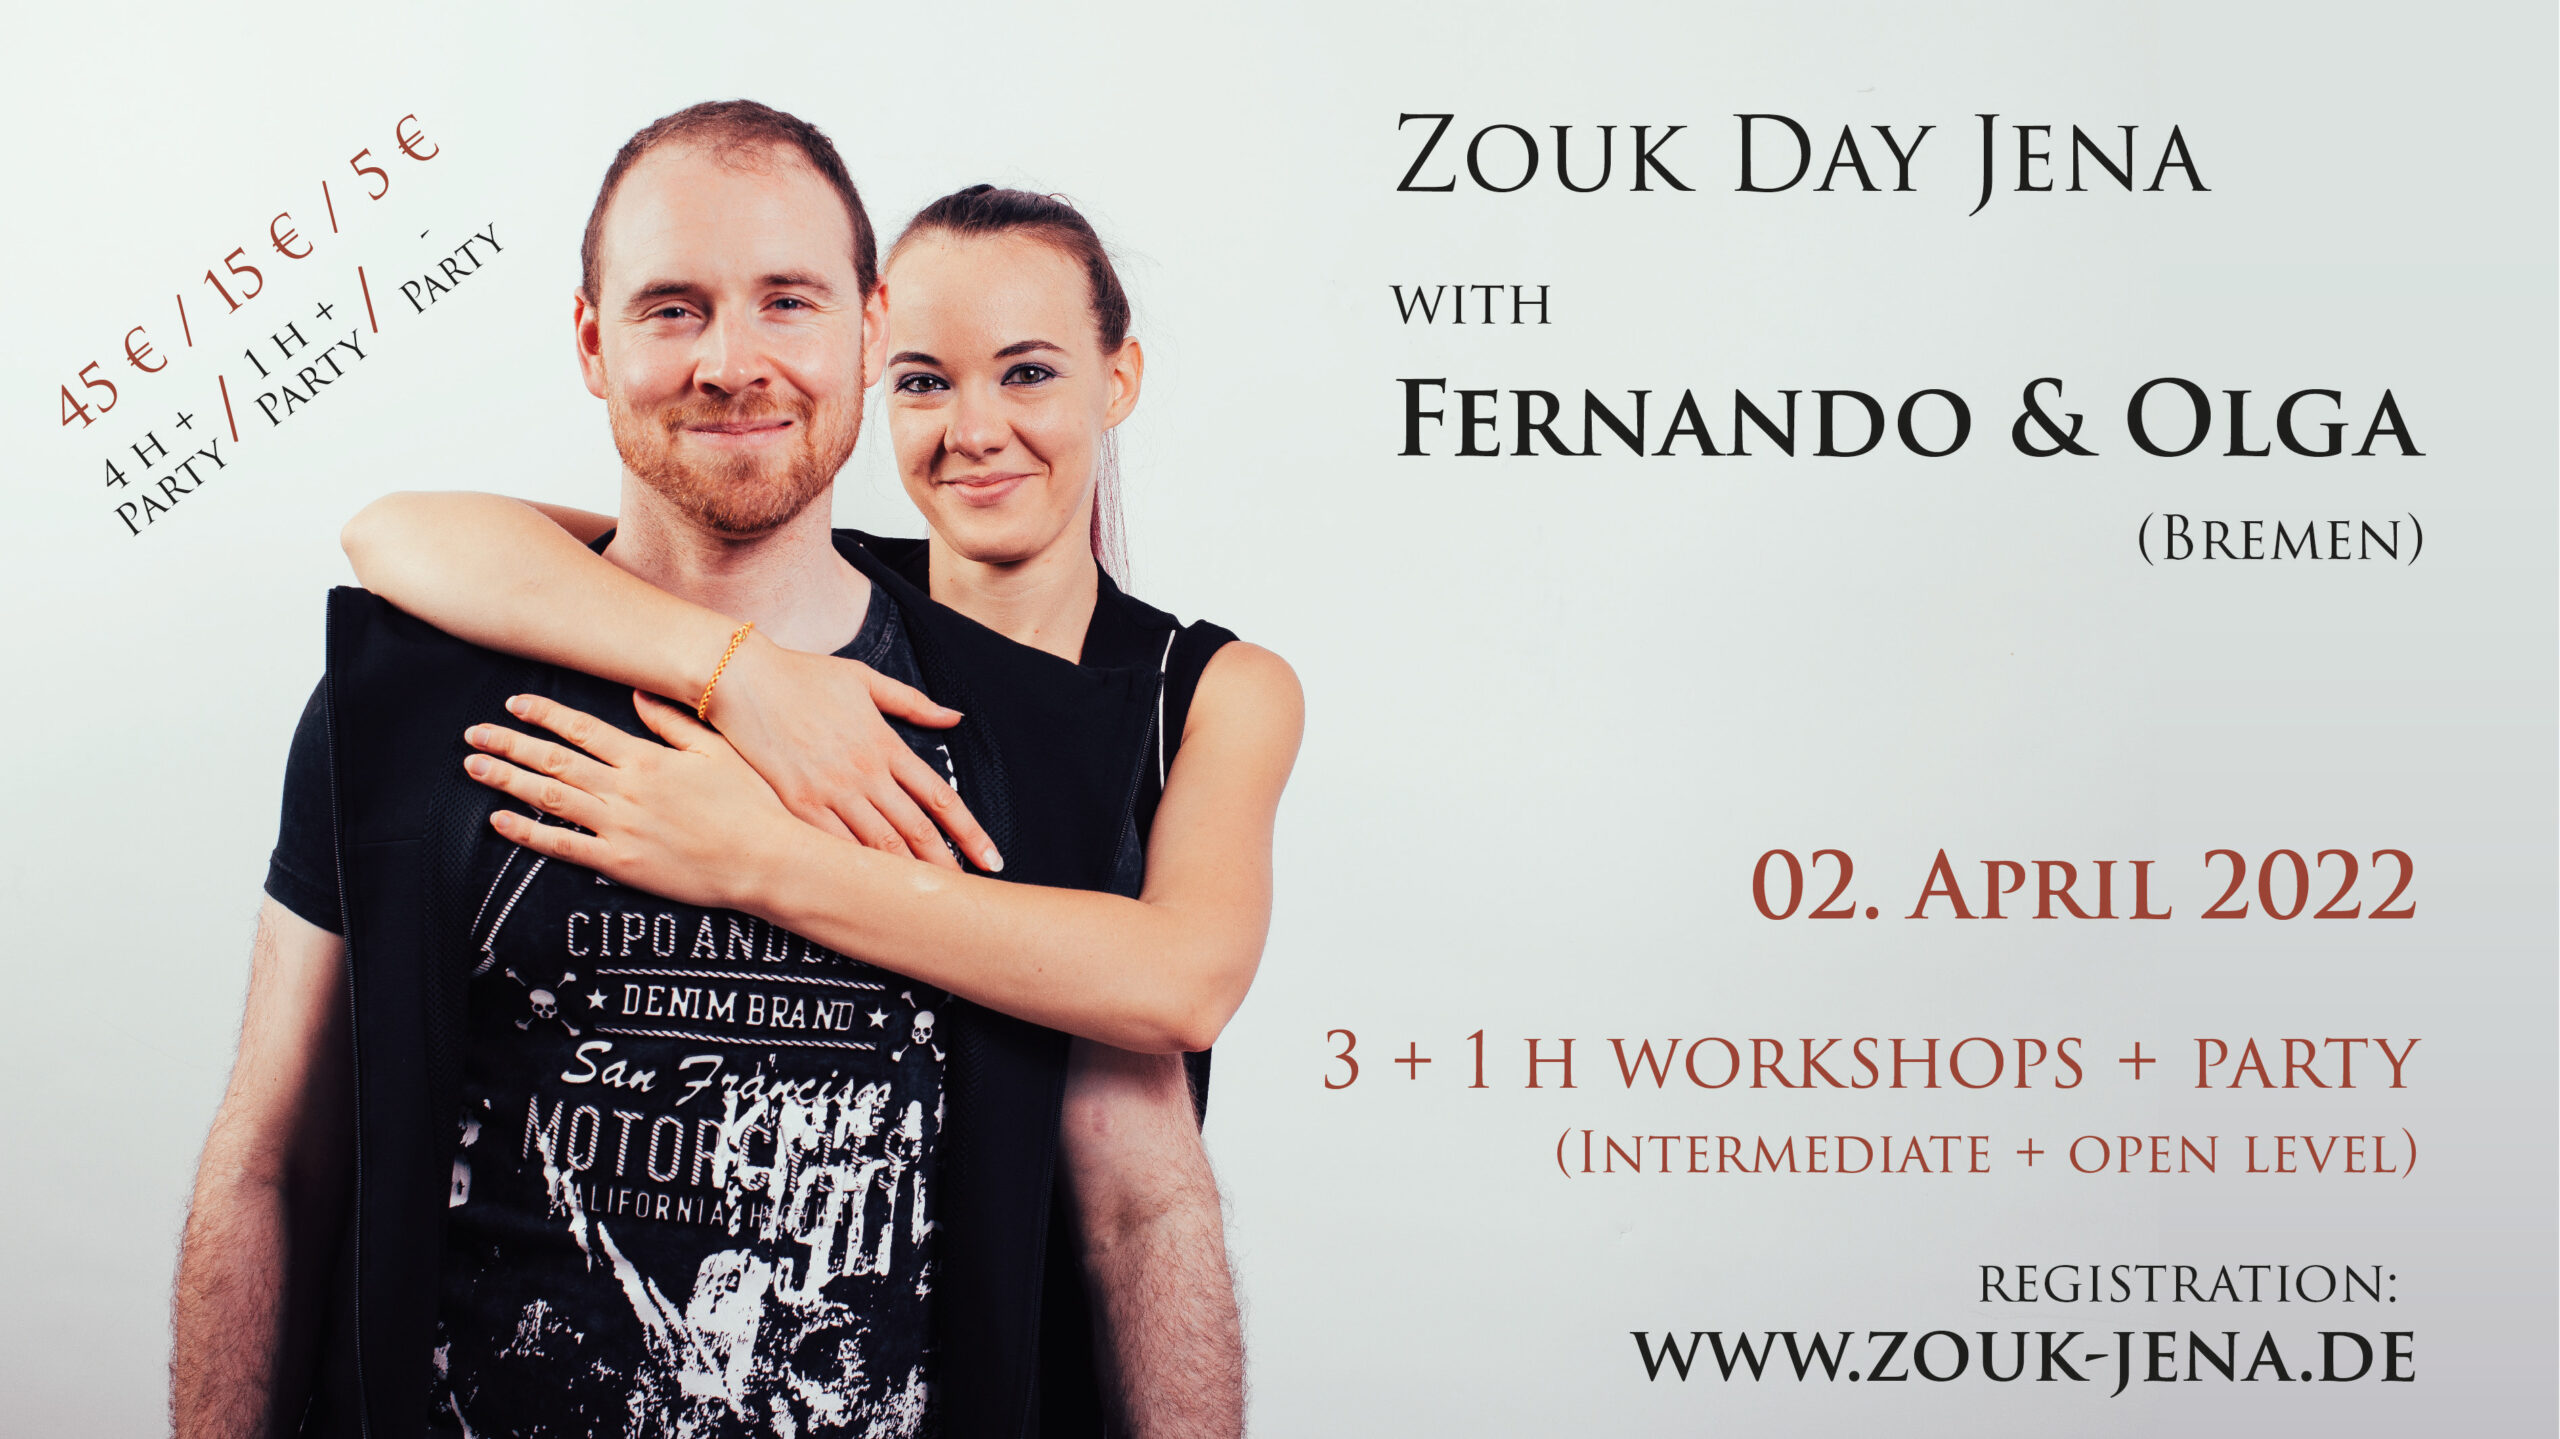 Zouk Day Jena - Fernando & Olga